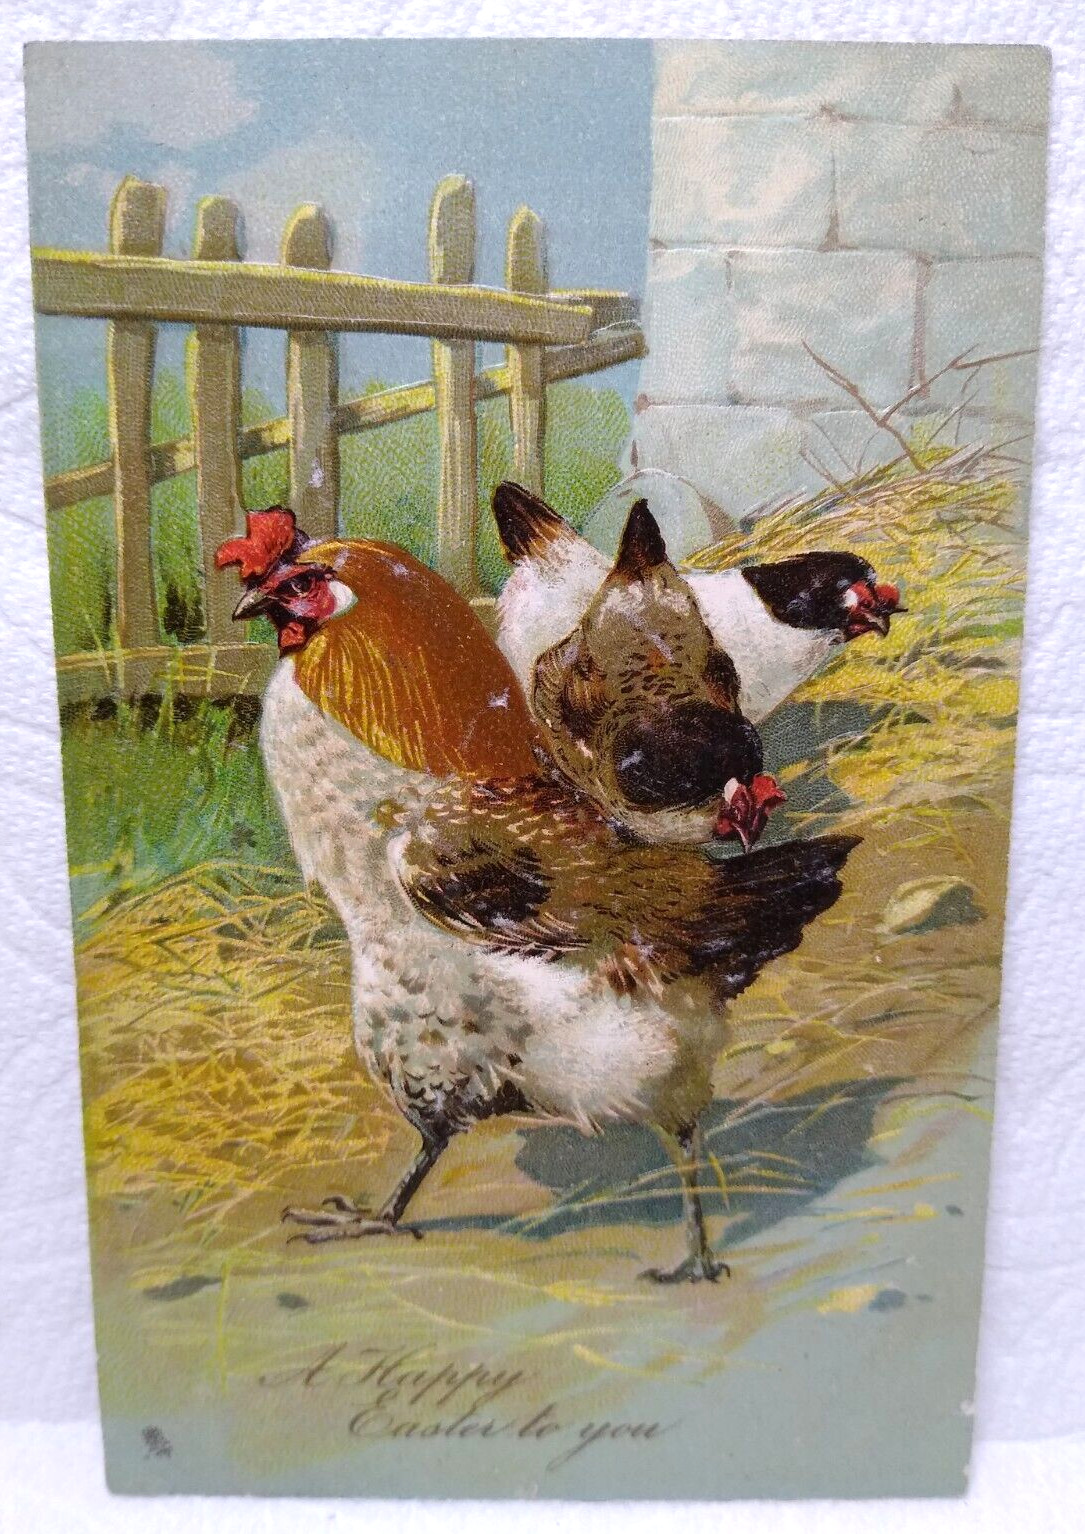 Tucks Easter Greetings Postcard Hen Rooster Wooden Fence Hay Series 1242 Vintage